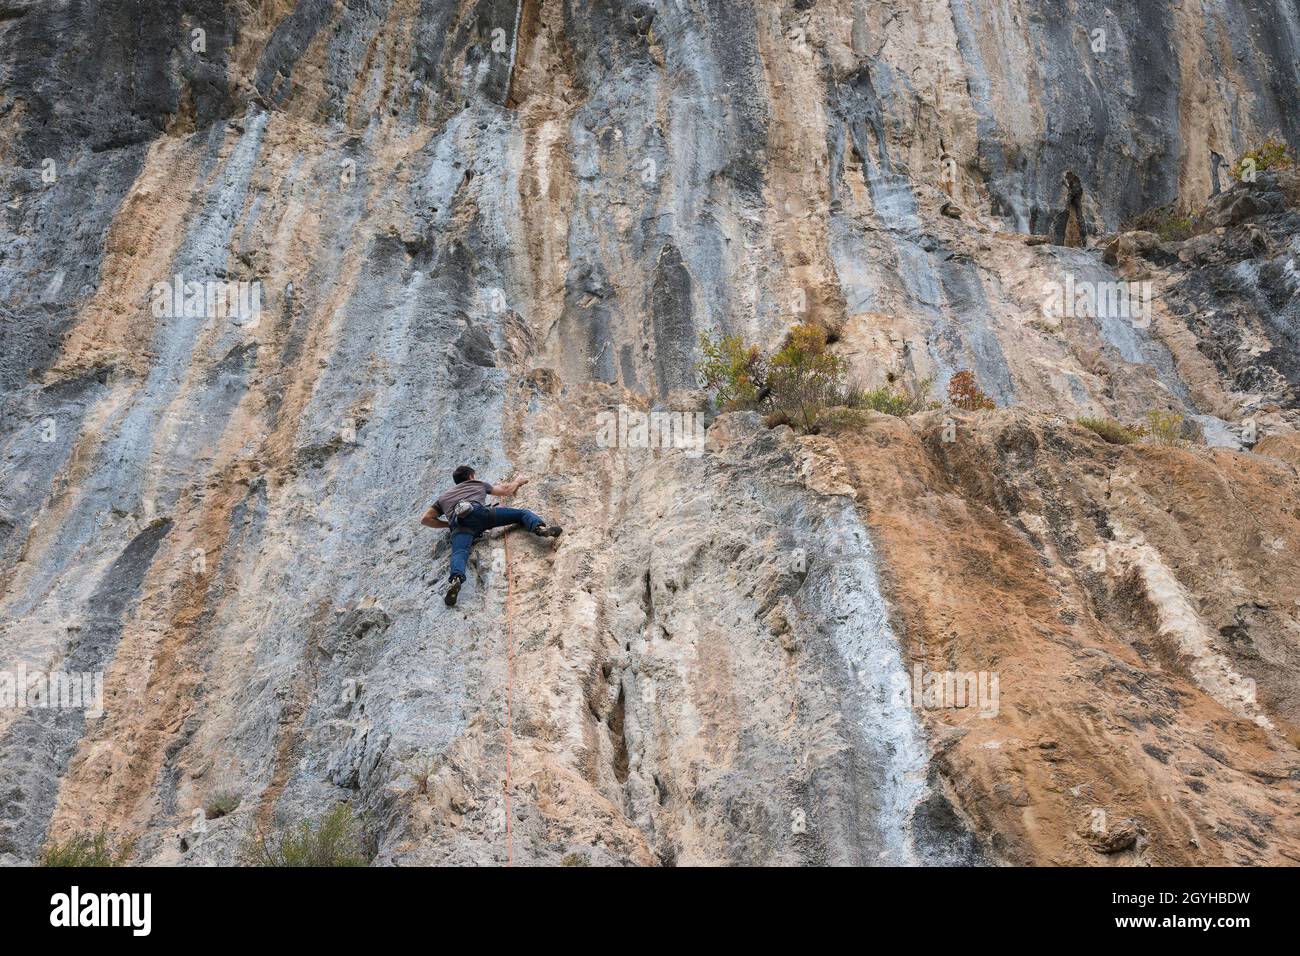 Rocchetta al Volturno,région de Molise,Italie:Un jeune homme, membre de l'association Malatesta, monte un mur rocheux près de Rocchetta al Volturno. Banque D'Images